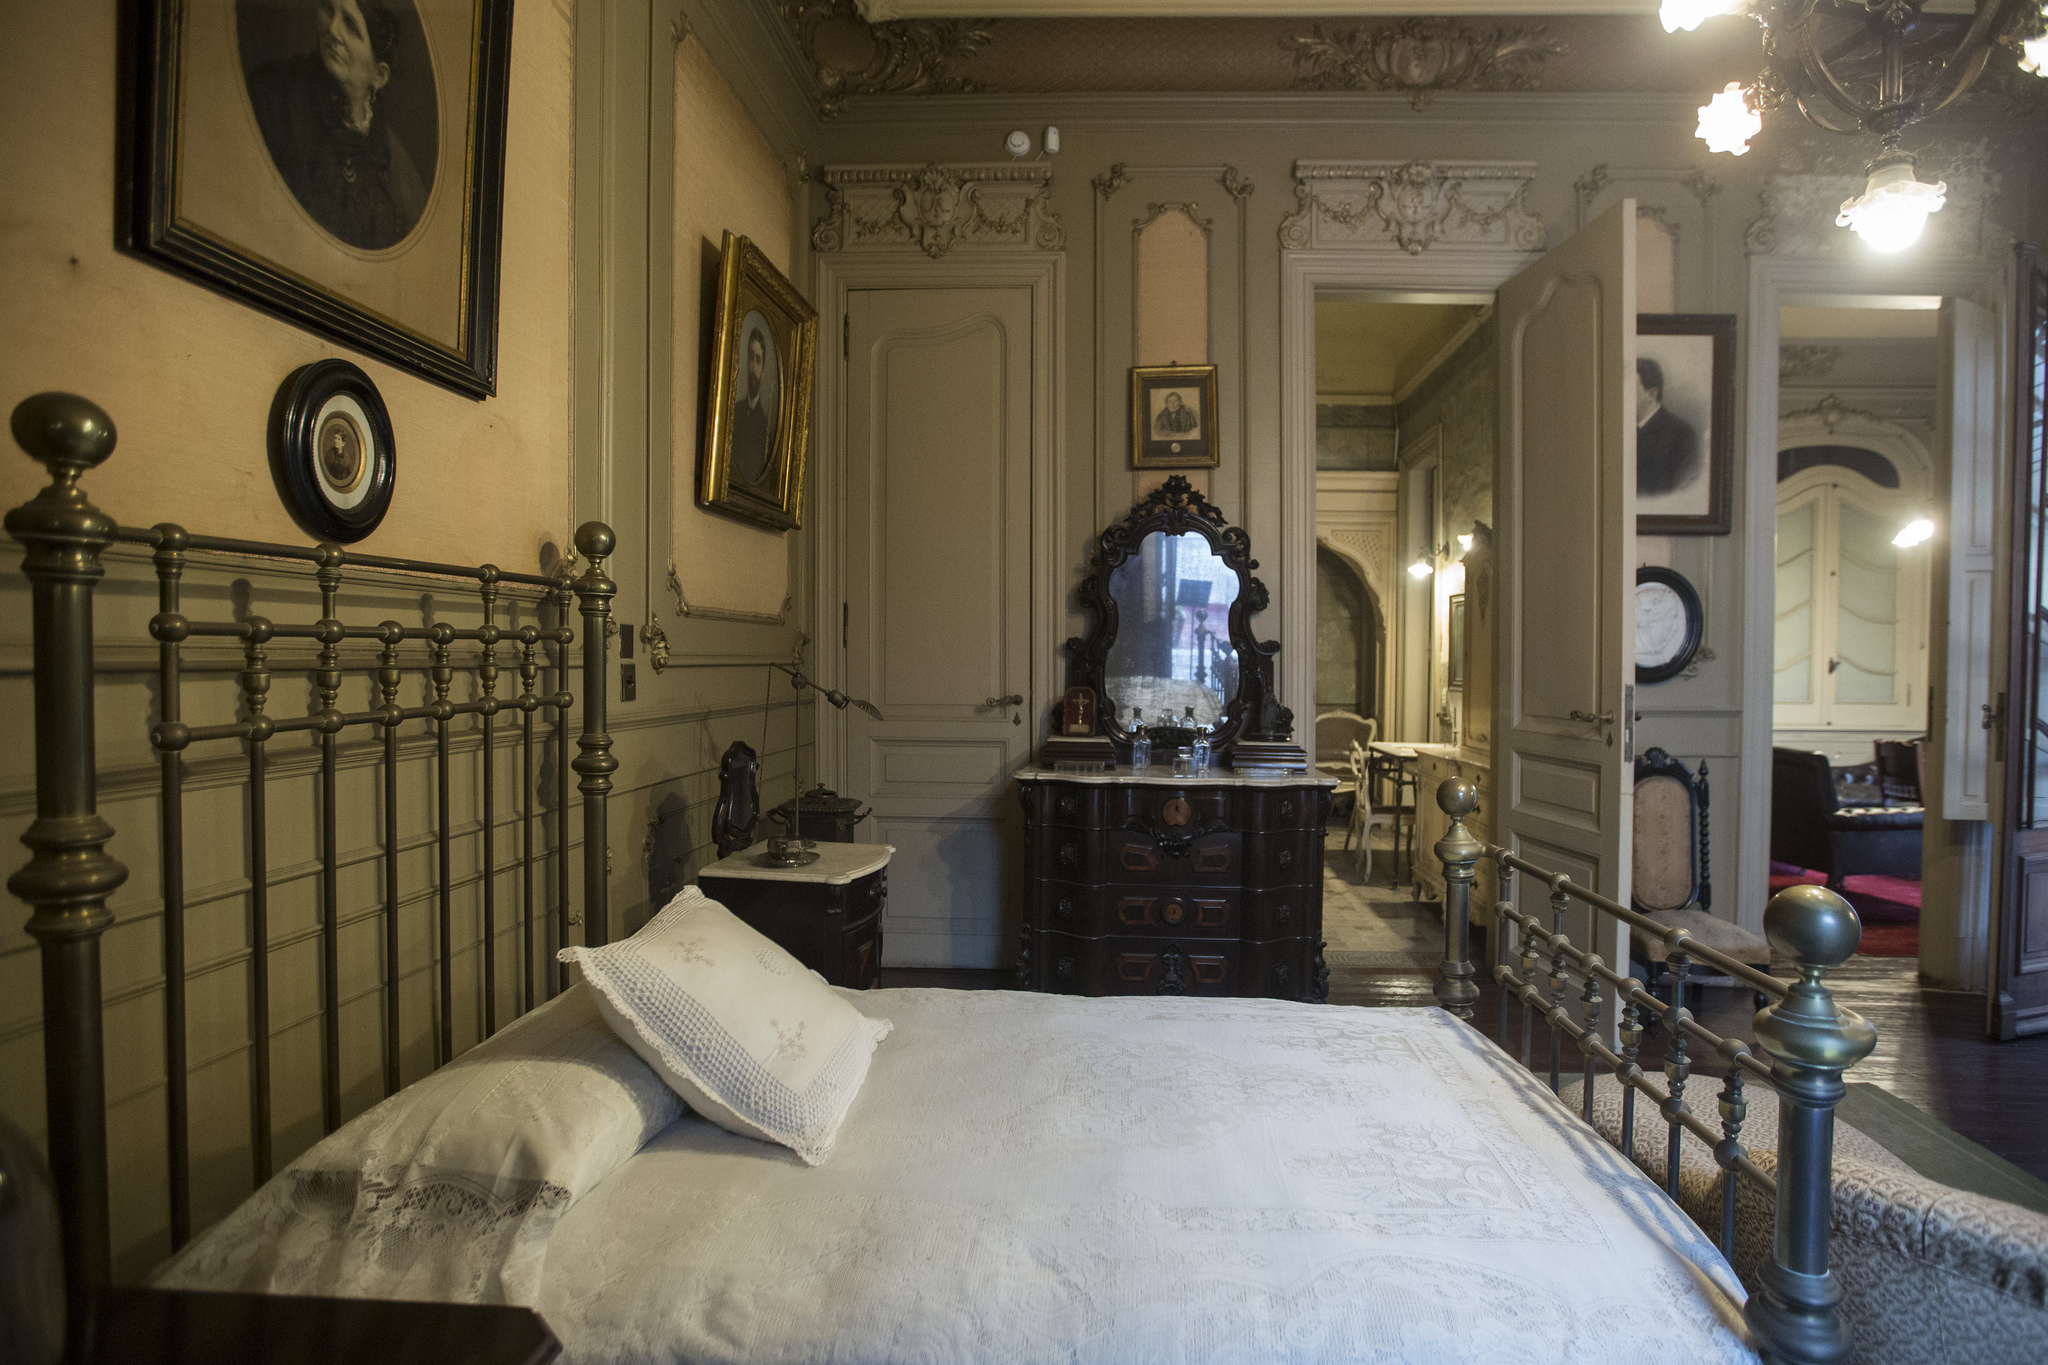 Sala Dormitorio. Aquí Bartolomé Mitre pasó sus últimos años de vida y falleció, en 1906.